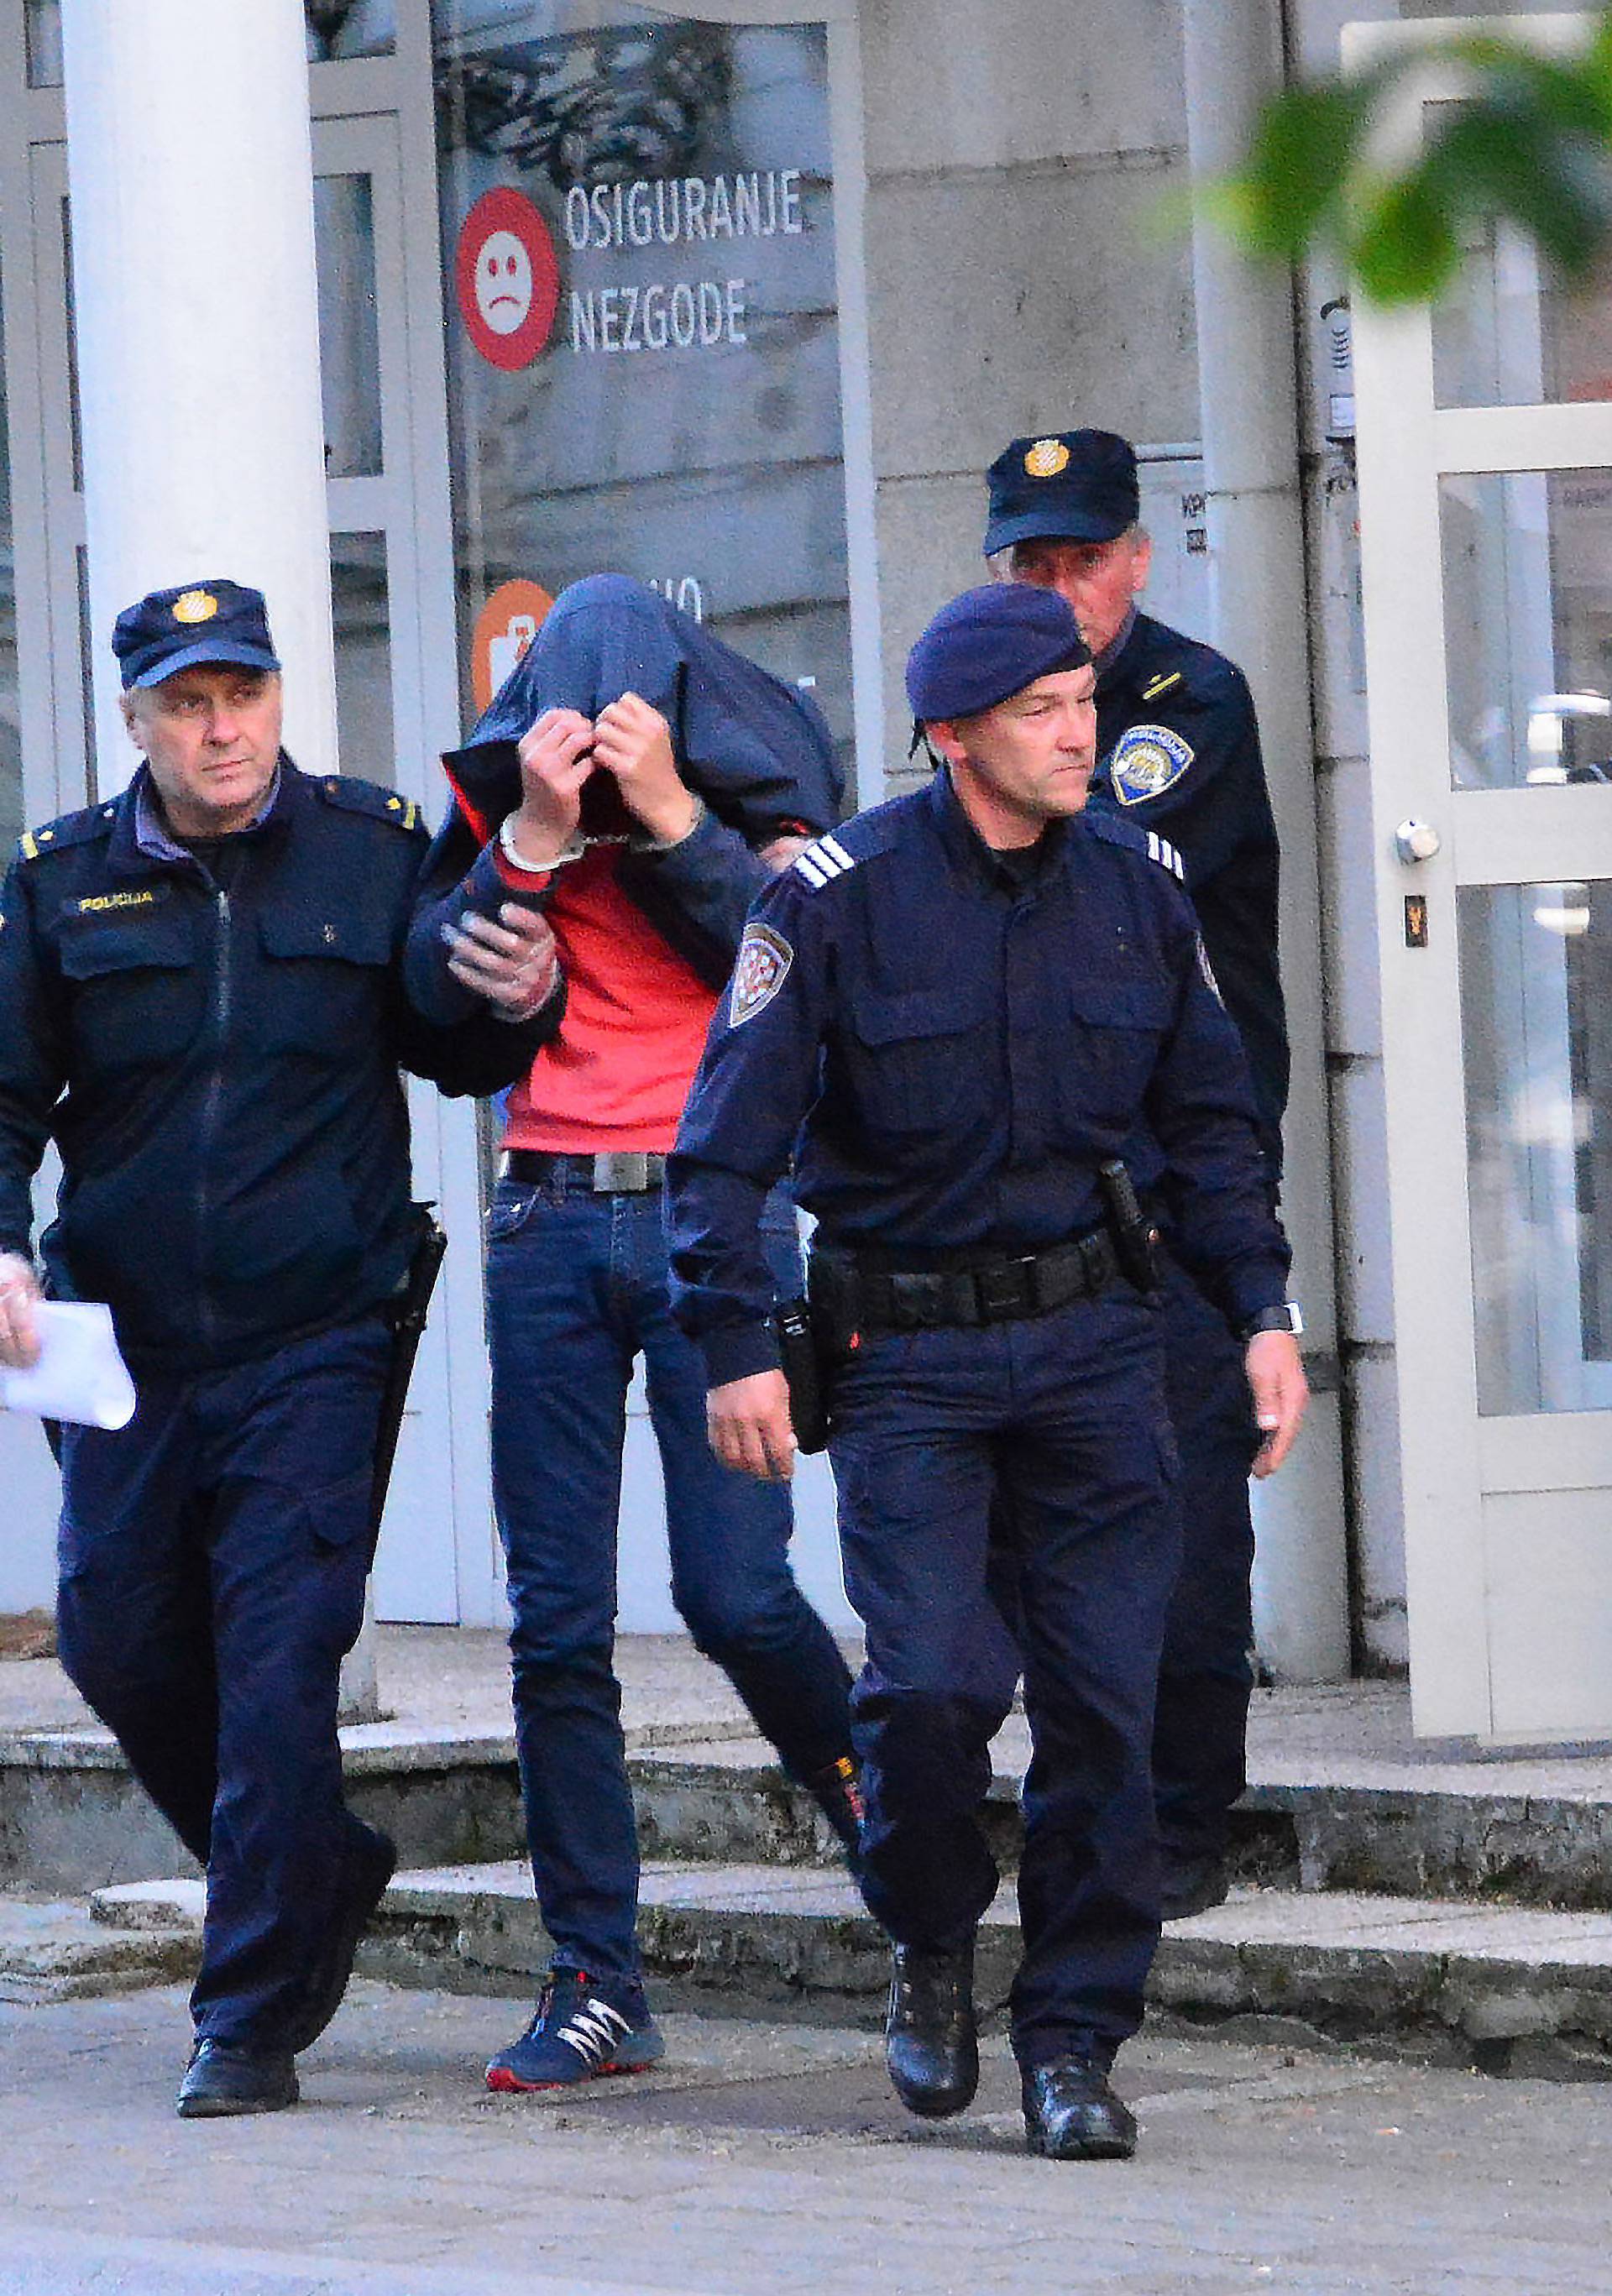 Ubojstvo u Slavonskom Brodu: Osumnjičenom odredili pritvor